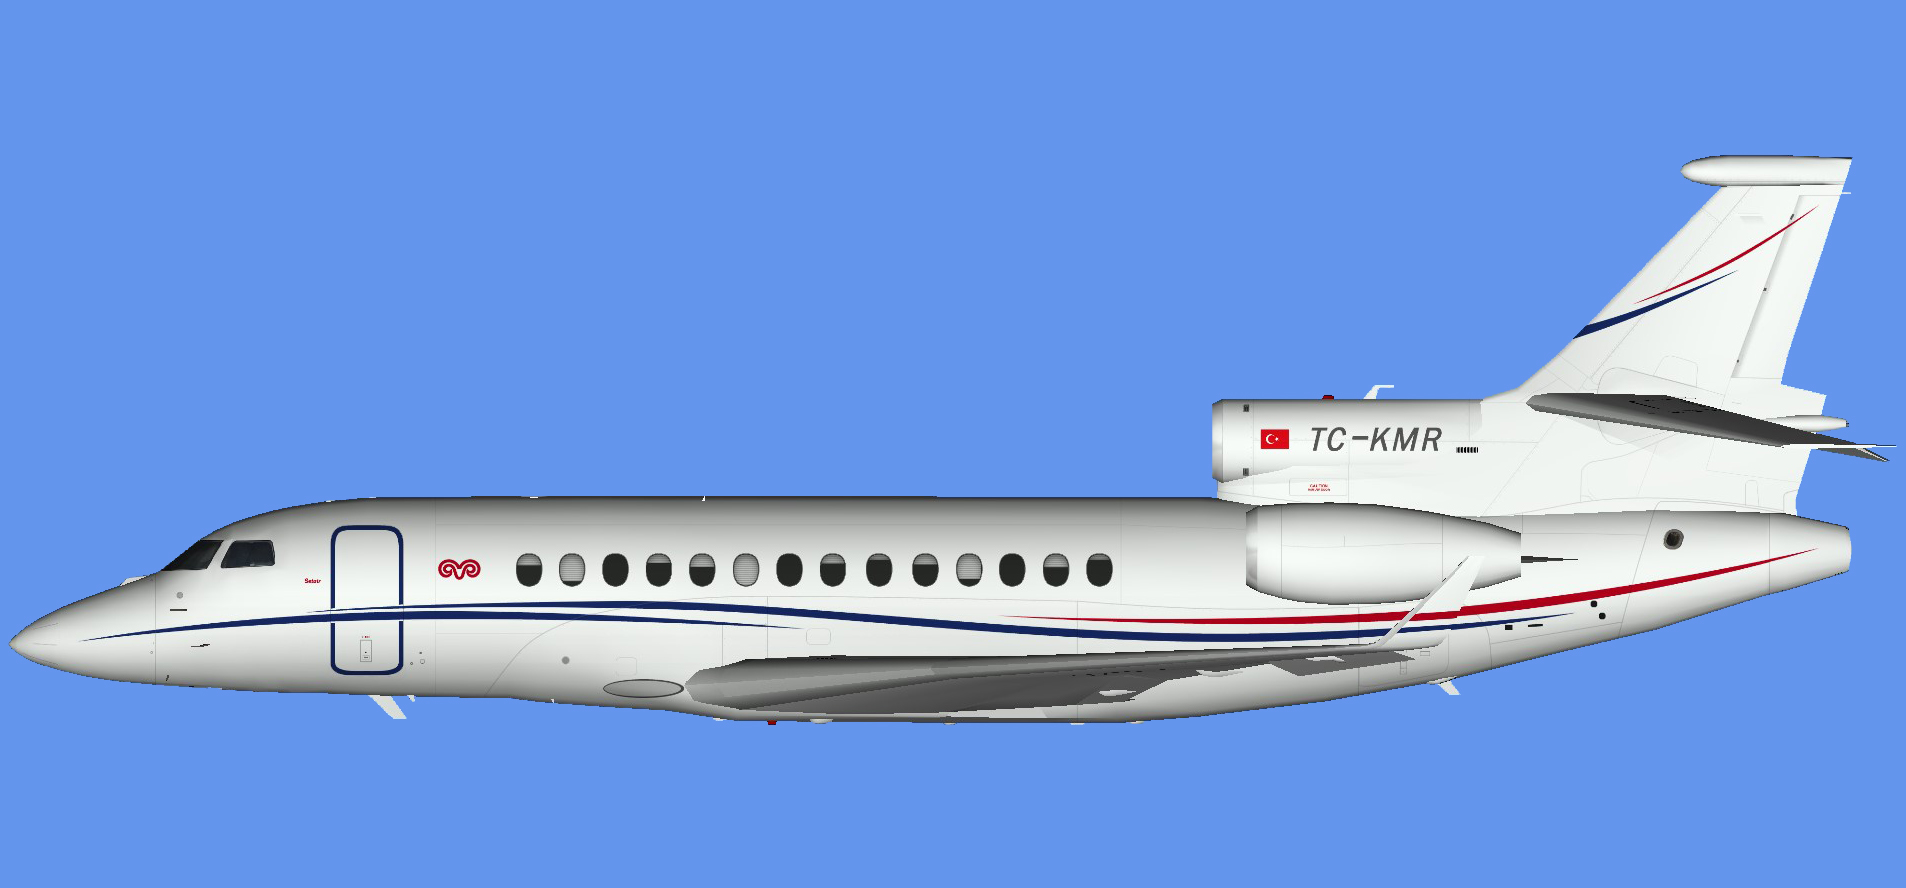 Dassault Falcon 7x TC-KMR